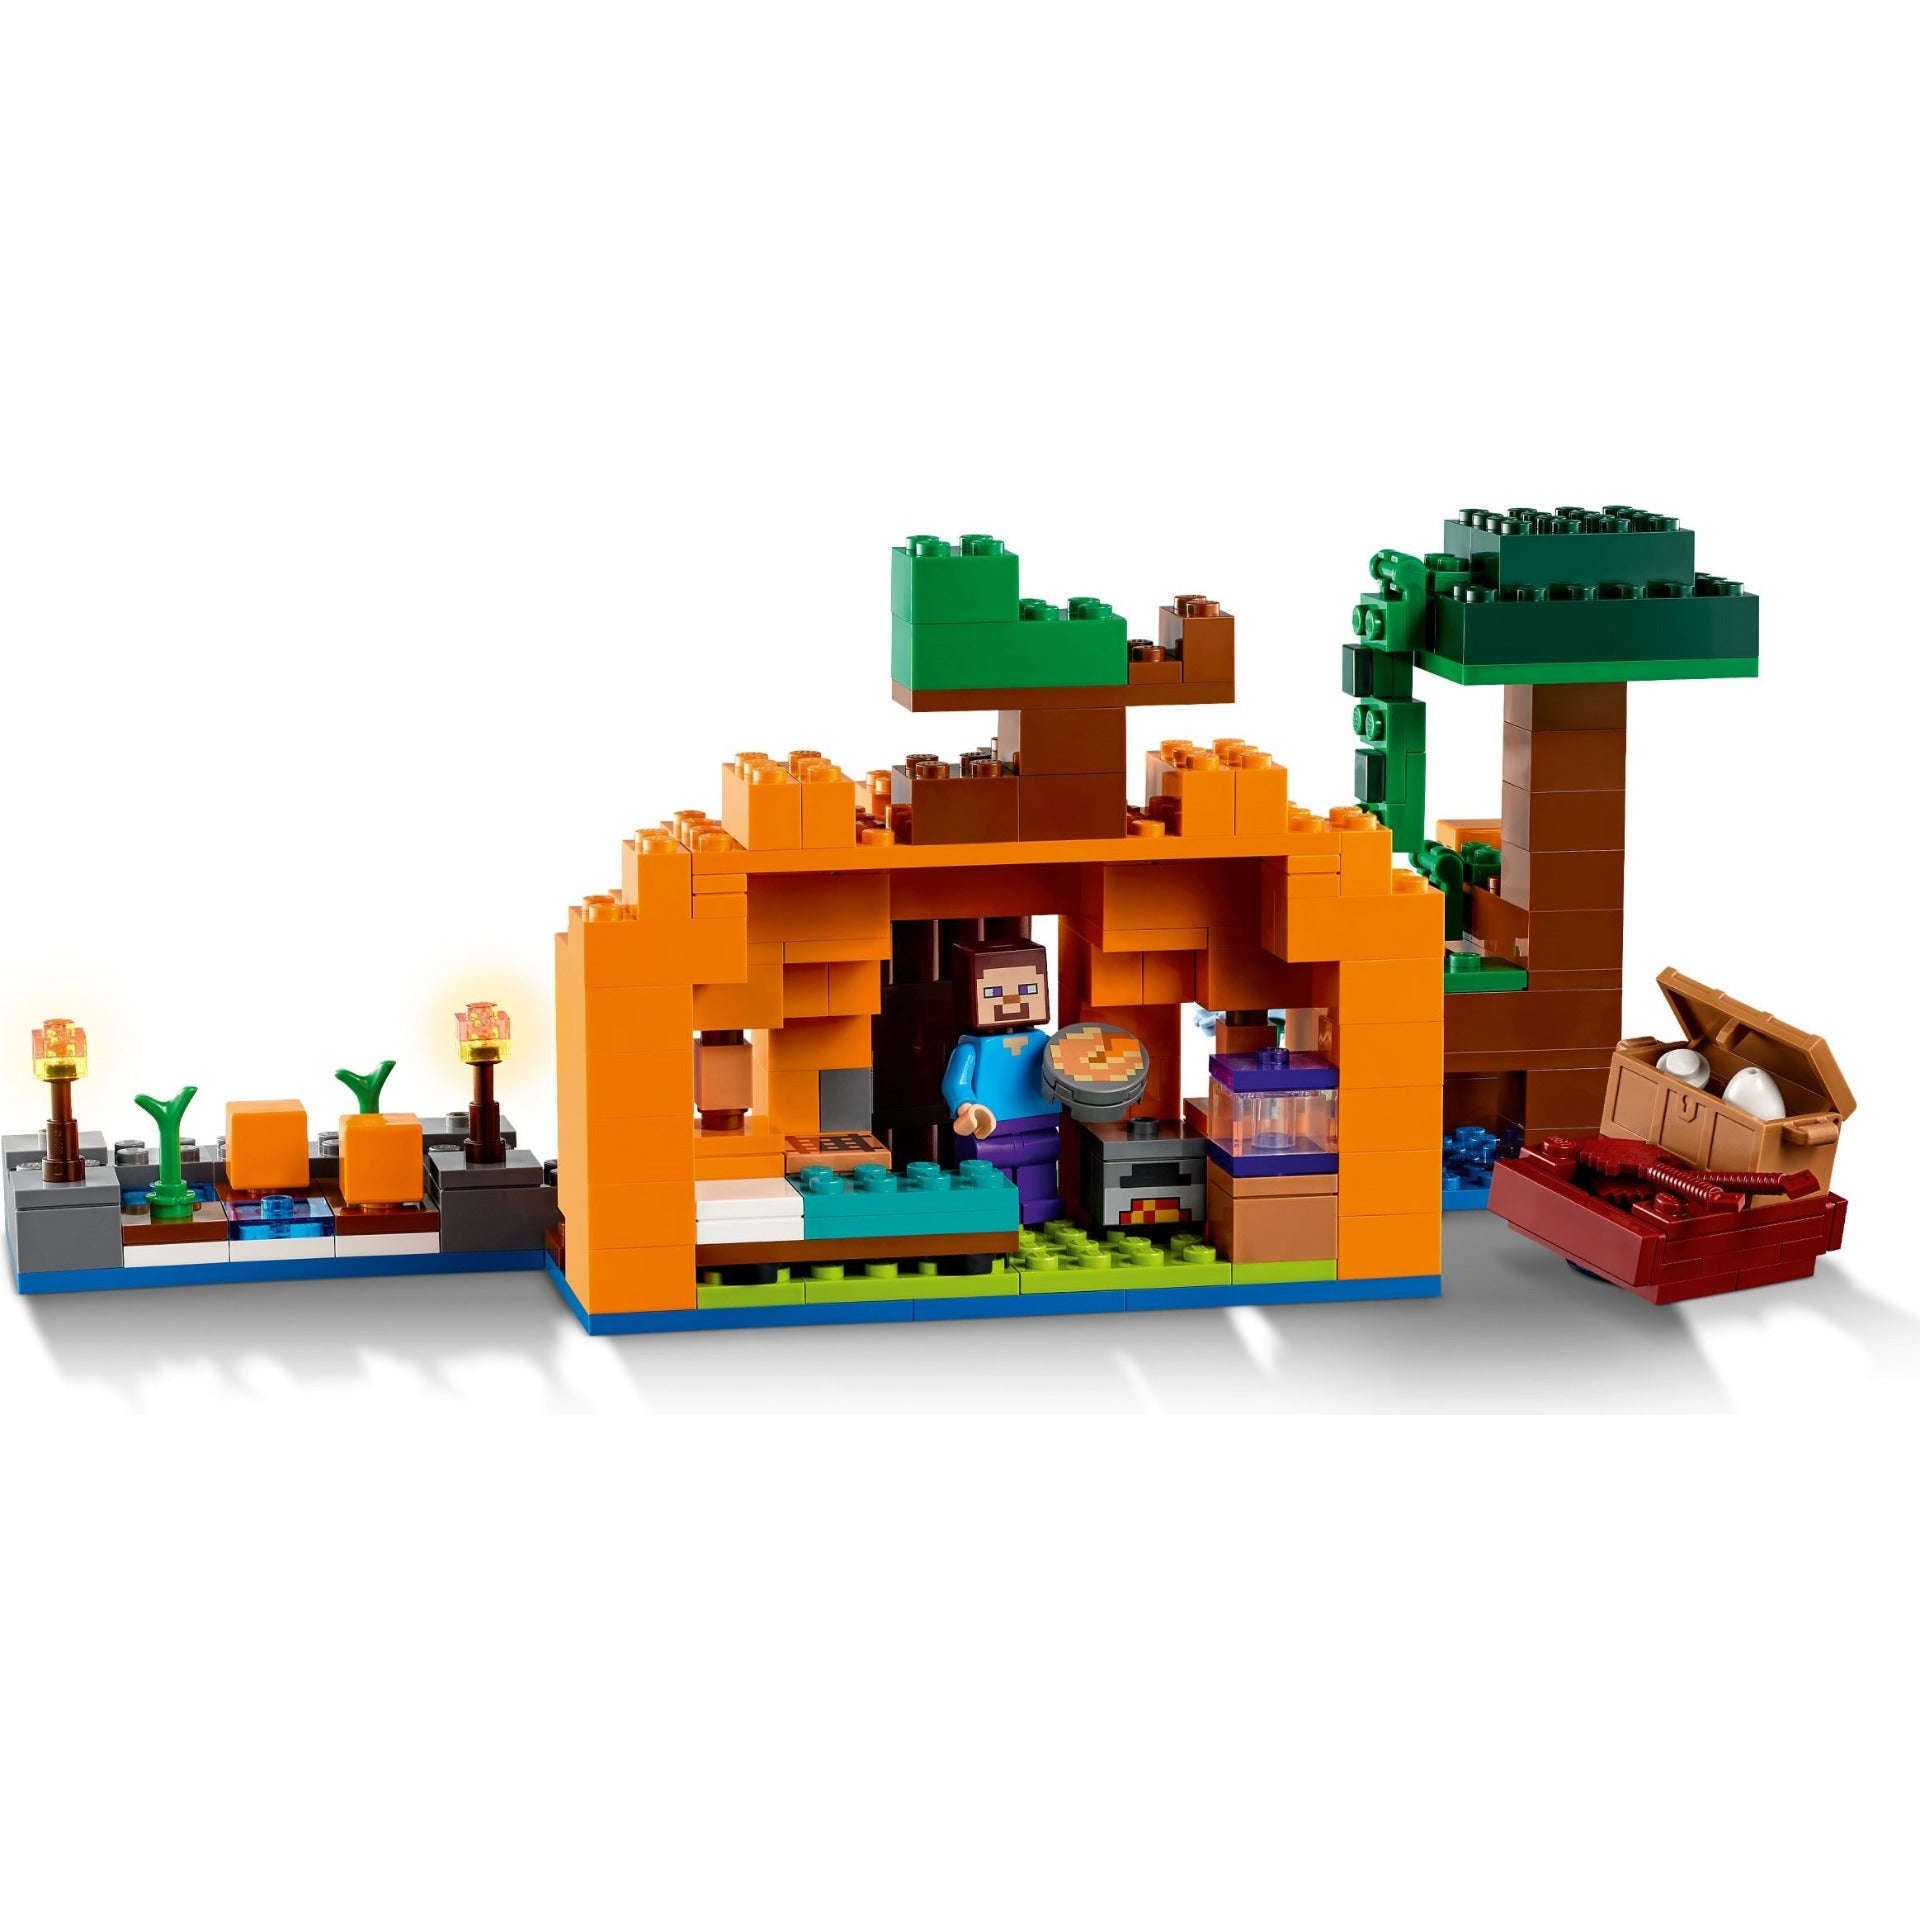 Toys N Tuck:Lego 21248 Minecraft The Pumpkin Farm,Lego Minecraft